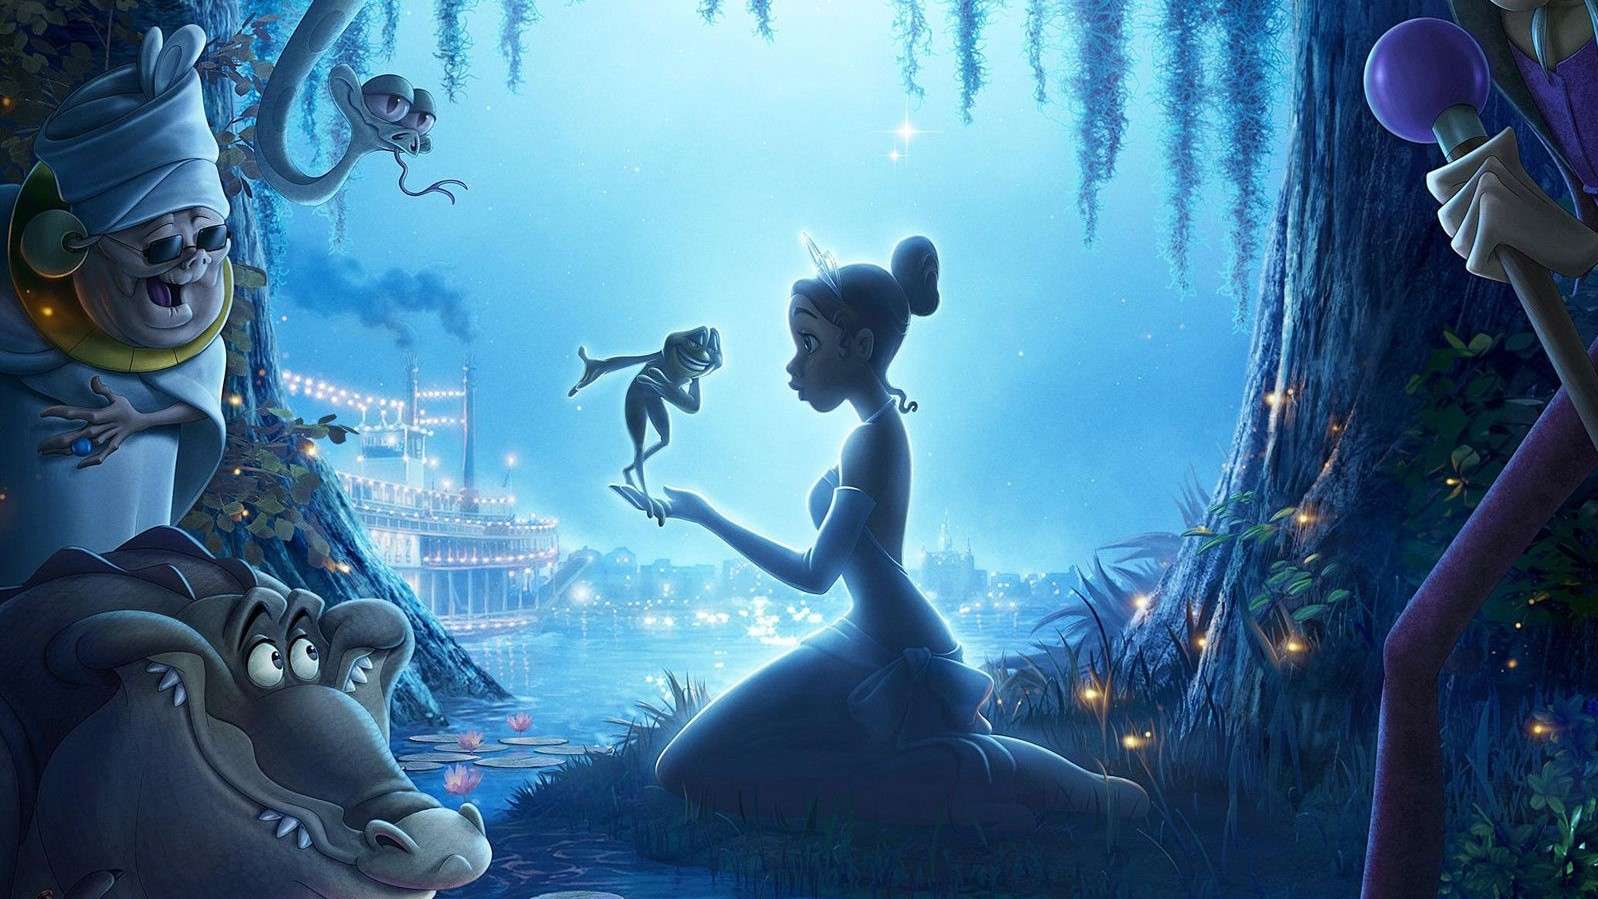 Sau Nàng Tiên Cá, Peter Pan cùng với Bạch Tuyết thì Công chúa và chàng Ếch là 'nạn nhân' tiếp theo của Disney